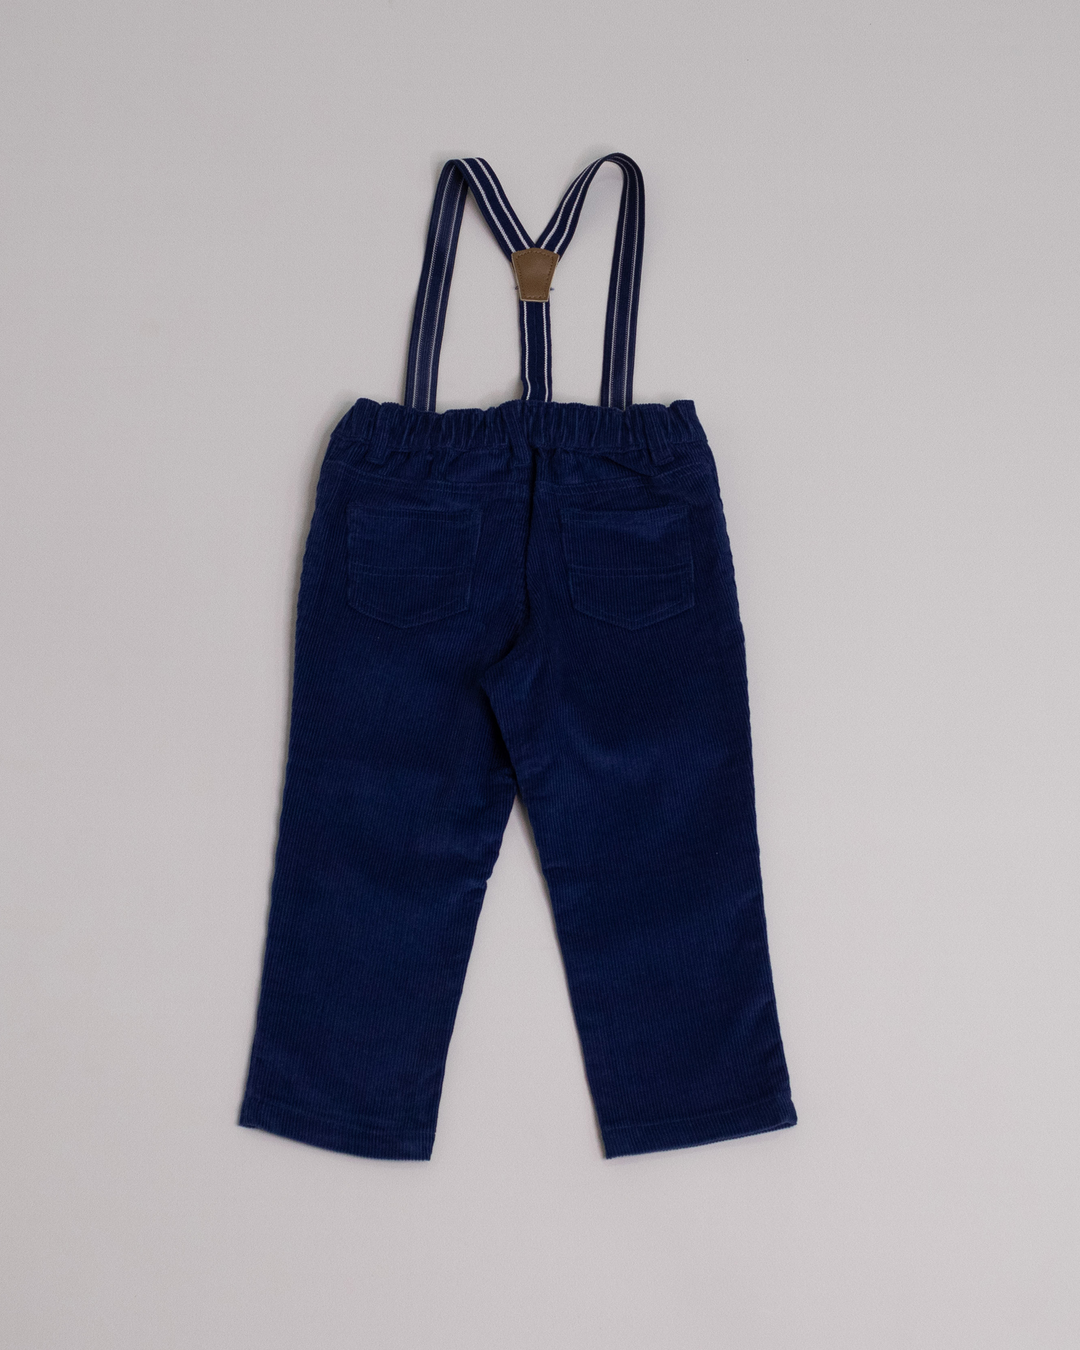 Pantalón de corduroy azul con tirantes